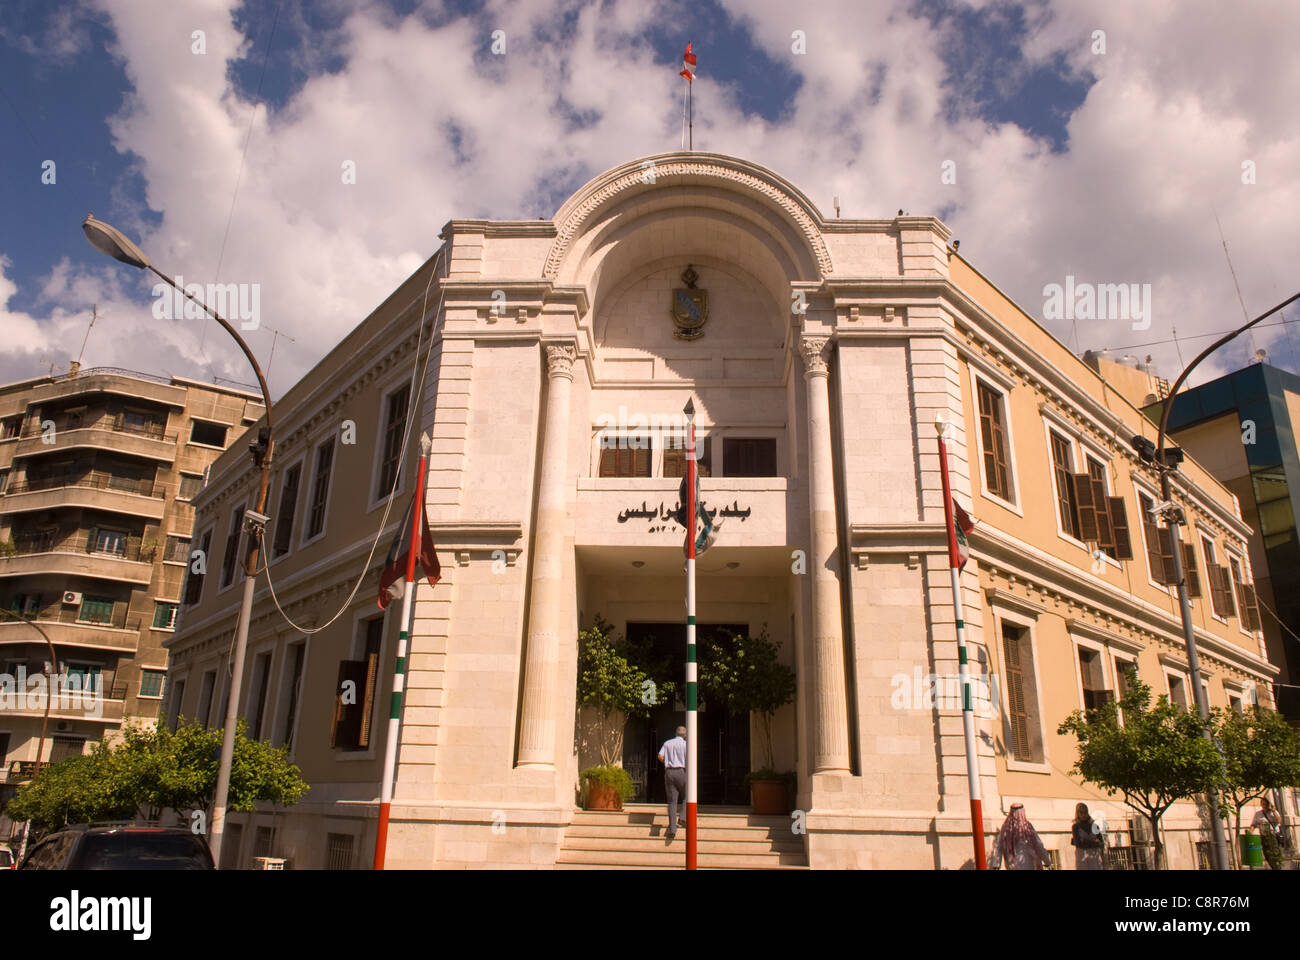 Municipality building, Tripoli, northern Lebanon. Stock Photo